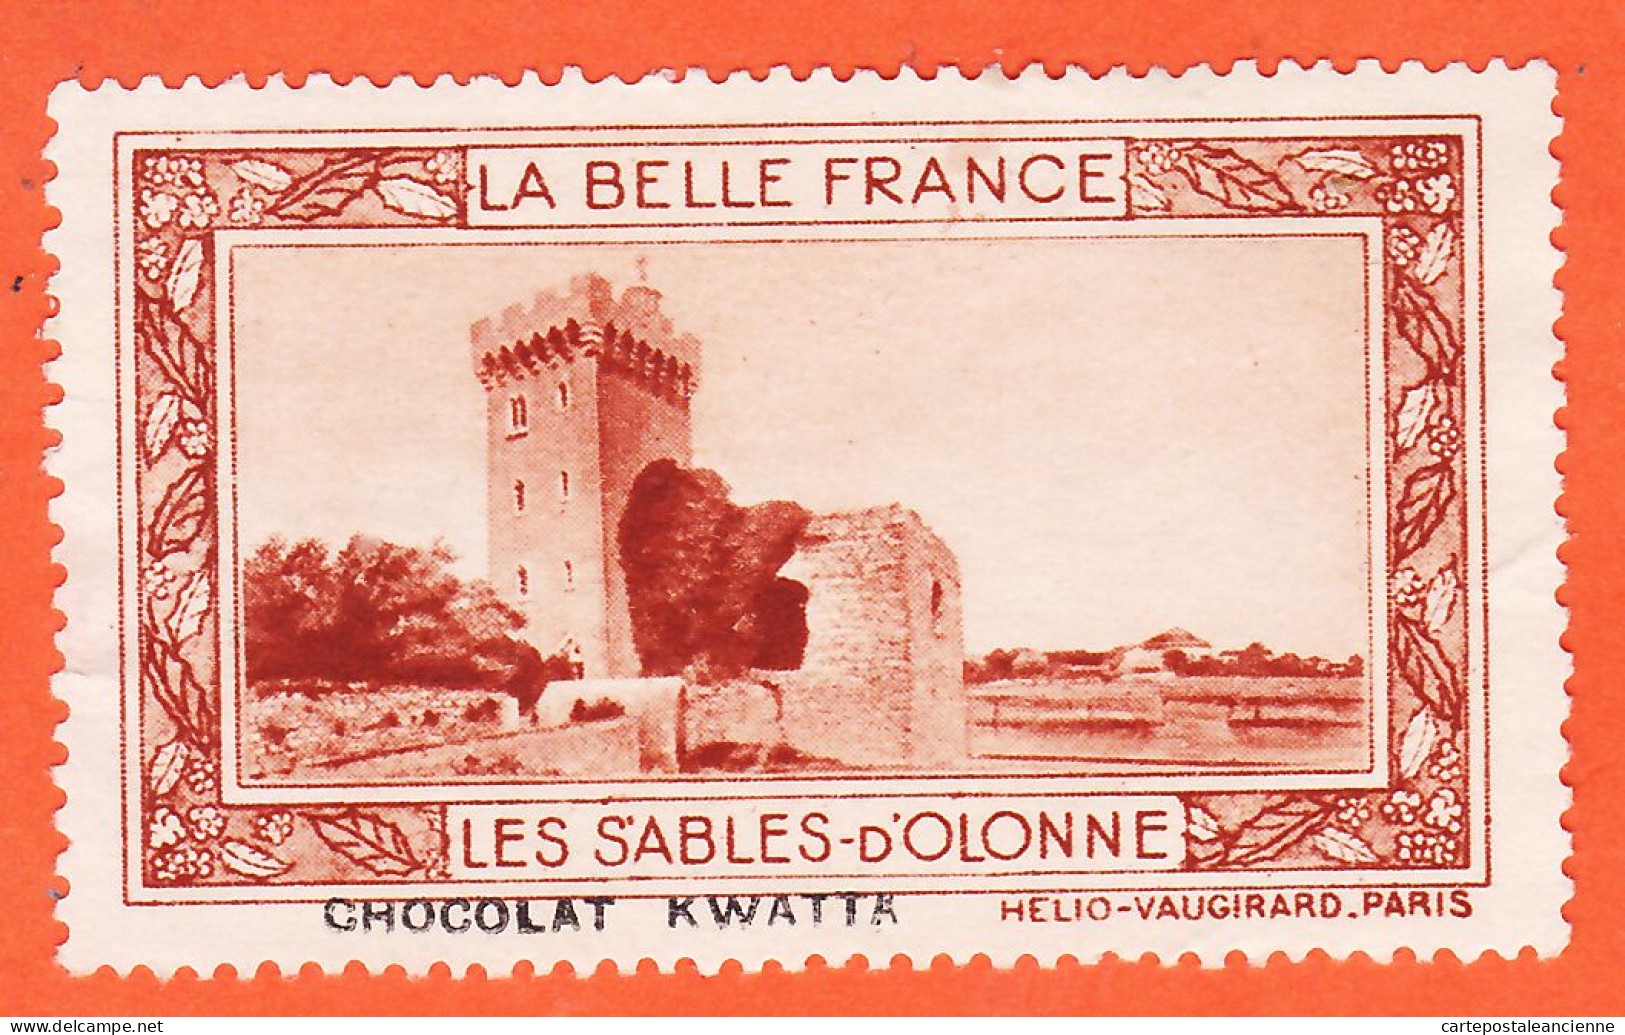 00166 ● LES SABLES-OLONNES 85-Vendée Pub Chocolat KWATTA Vignette Collection BELLE FRANCE HELIO-VAUGIRARD Erinnophilie - Tourismus (Vignetten)